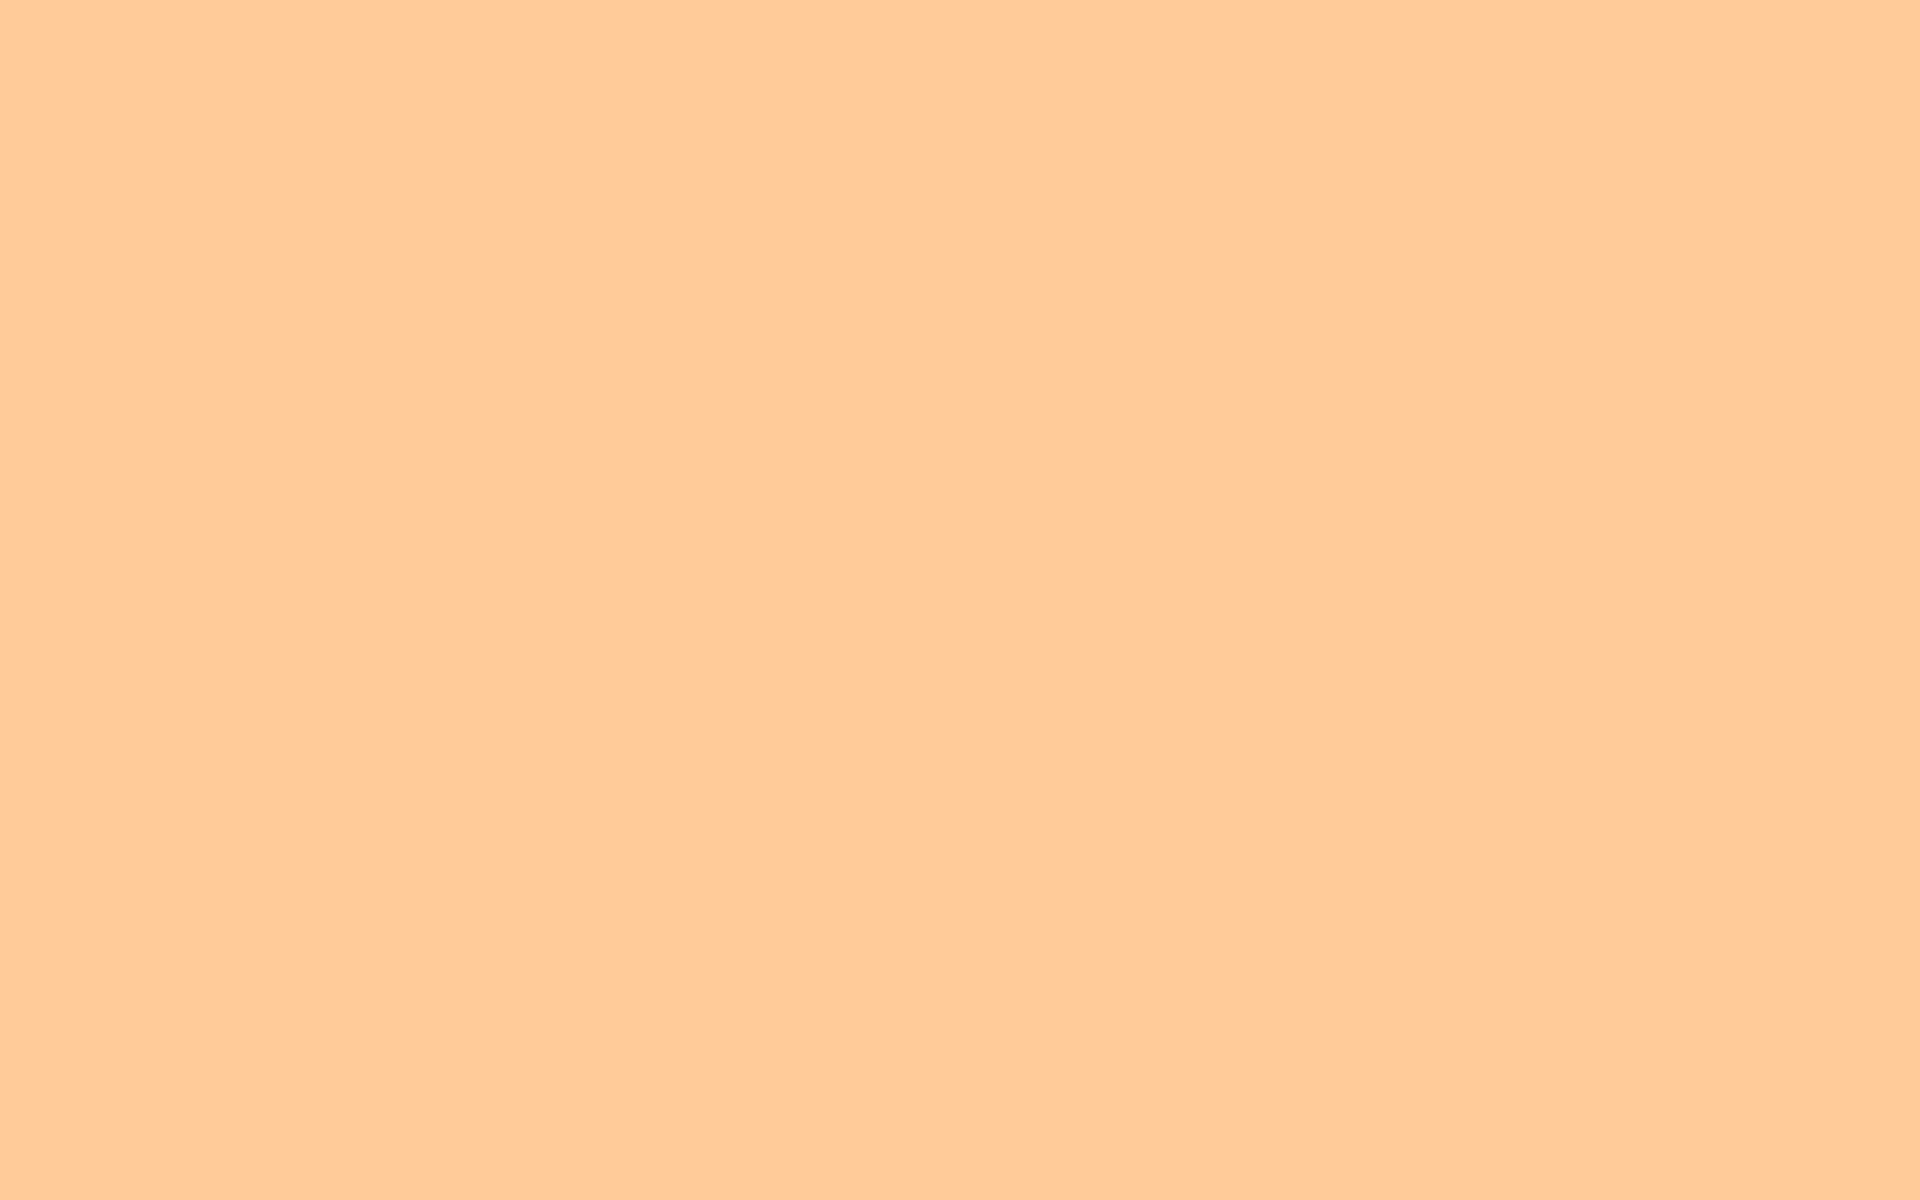 Digitally Painted Pastel Orange Aesthetic Background